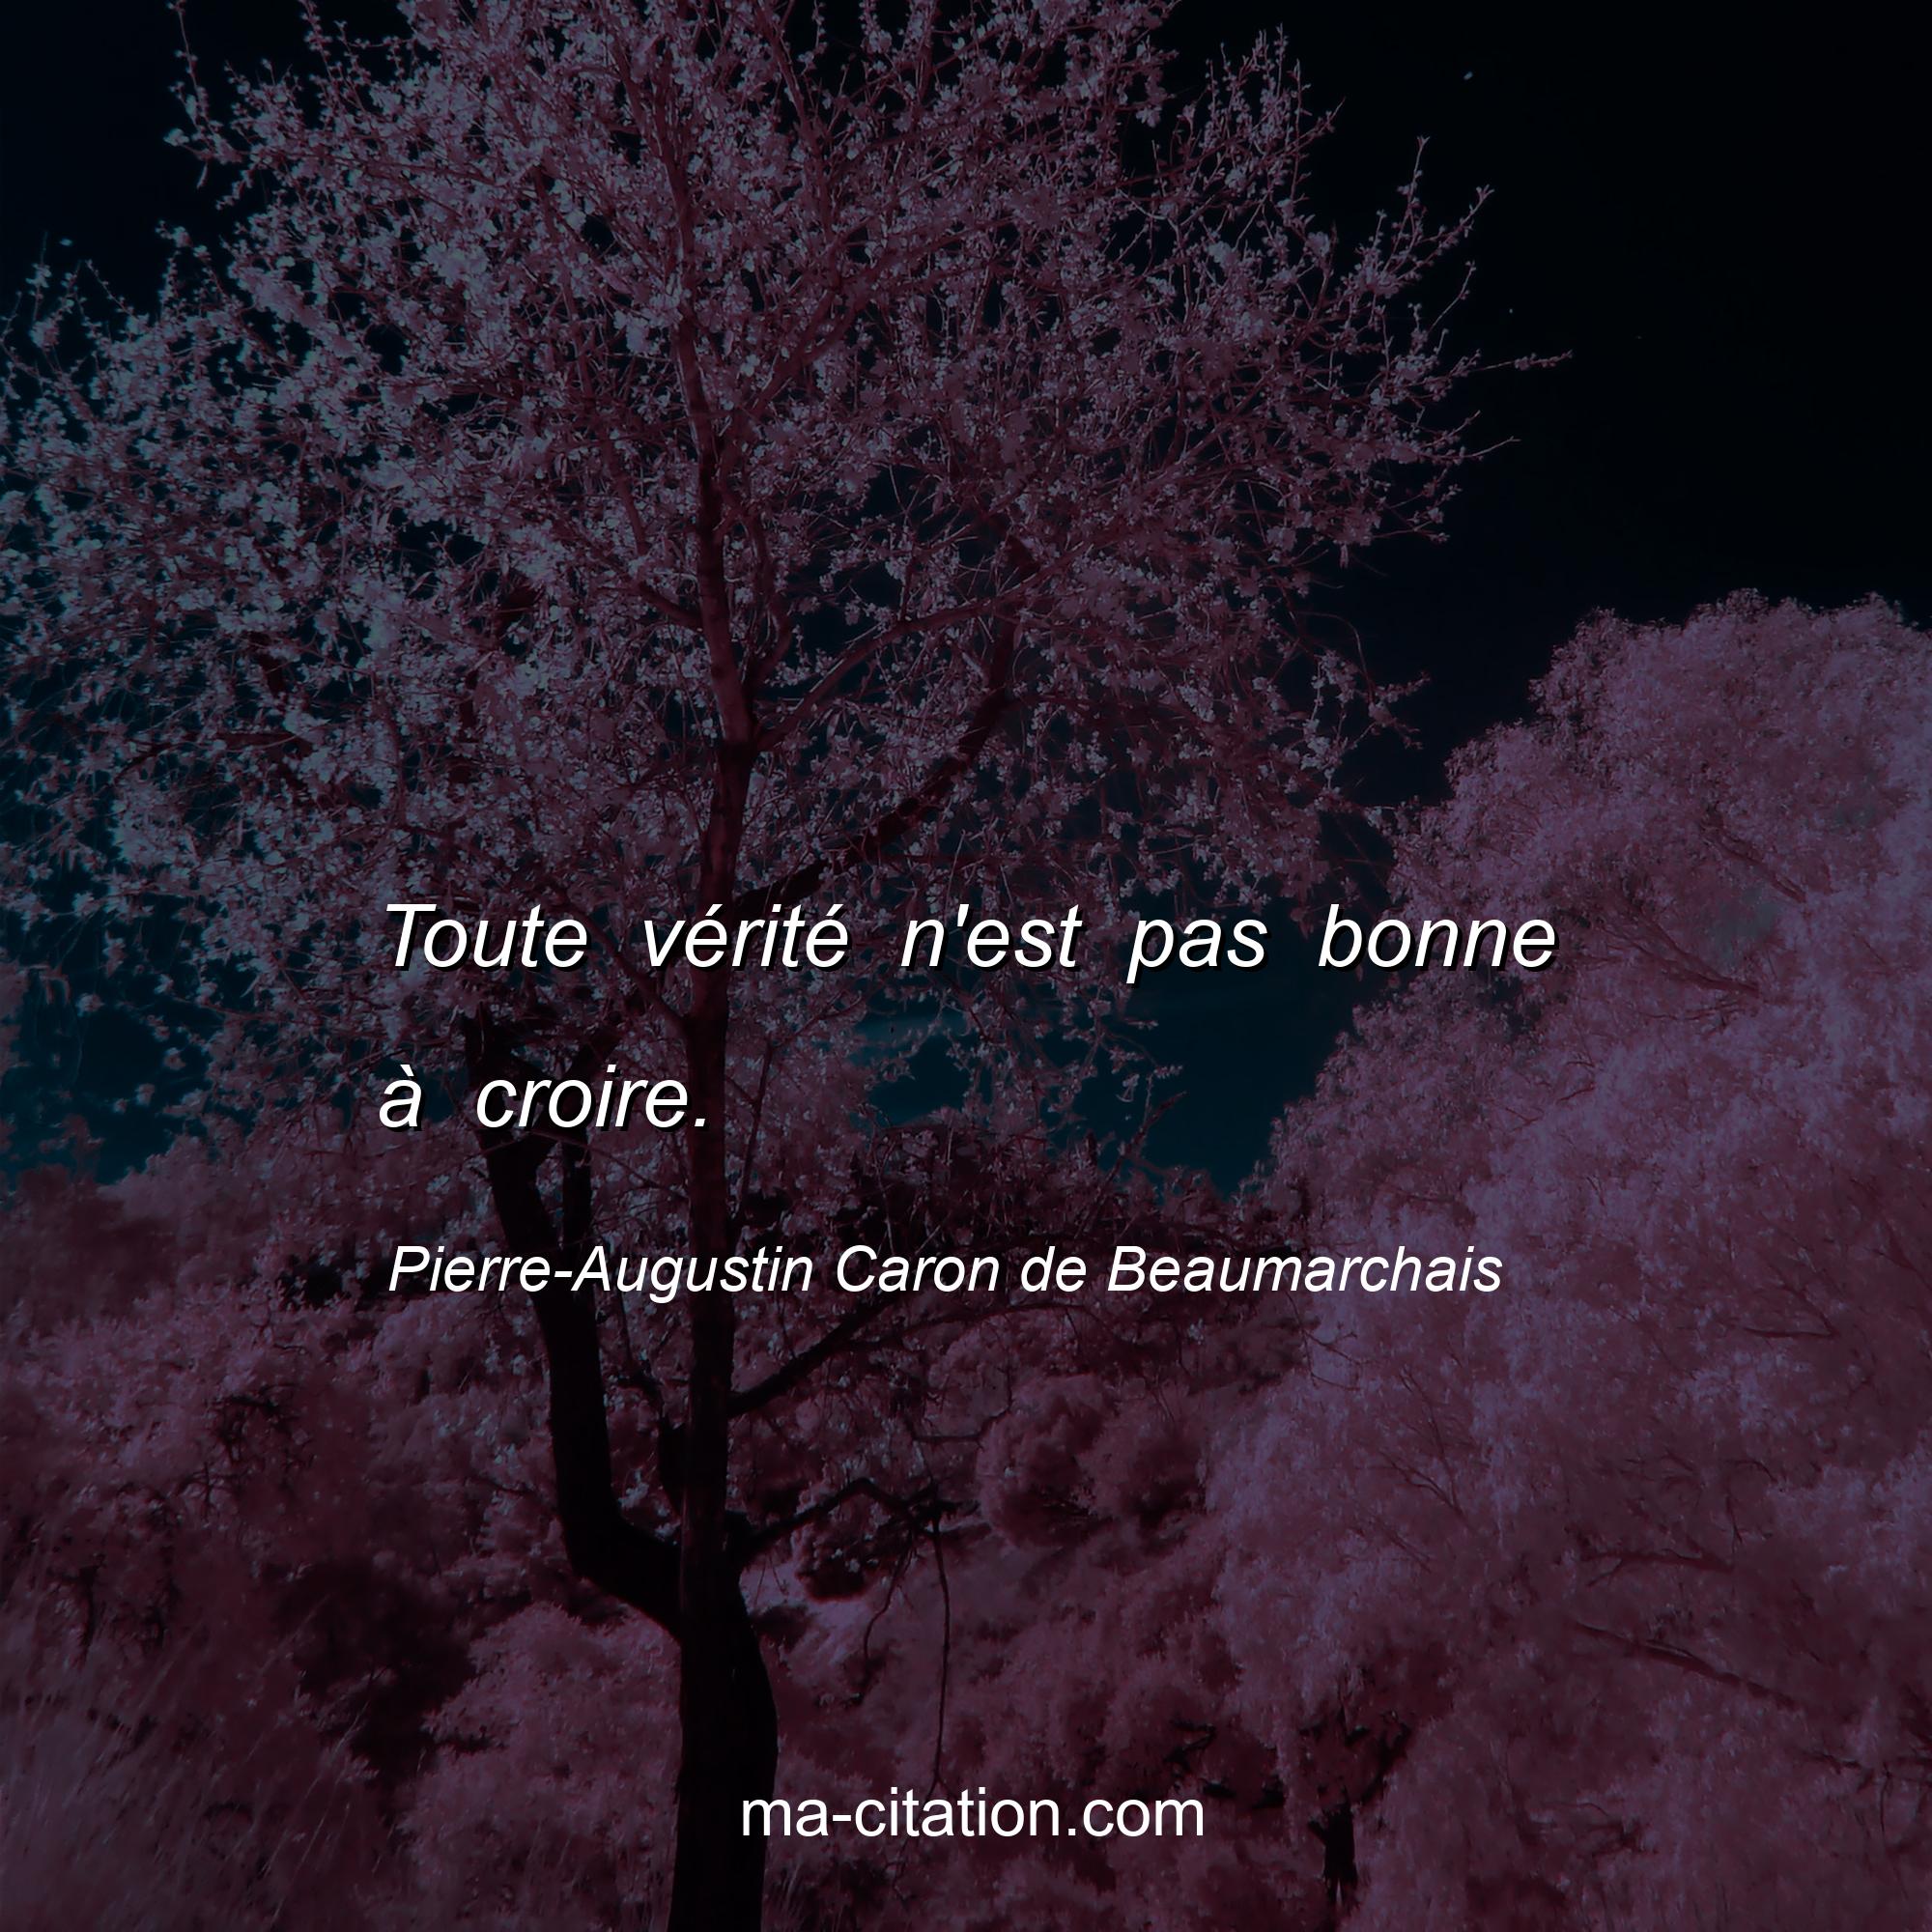 Pierre-Augustin Caron de Beaumarchais : Toute vérité n'est pas bonne à croire.